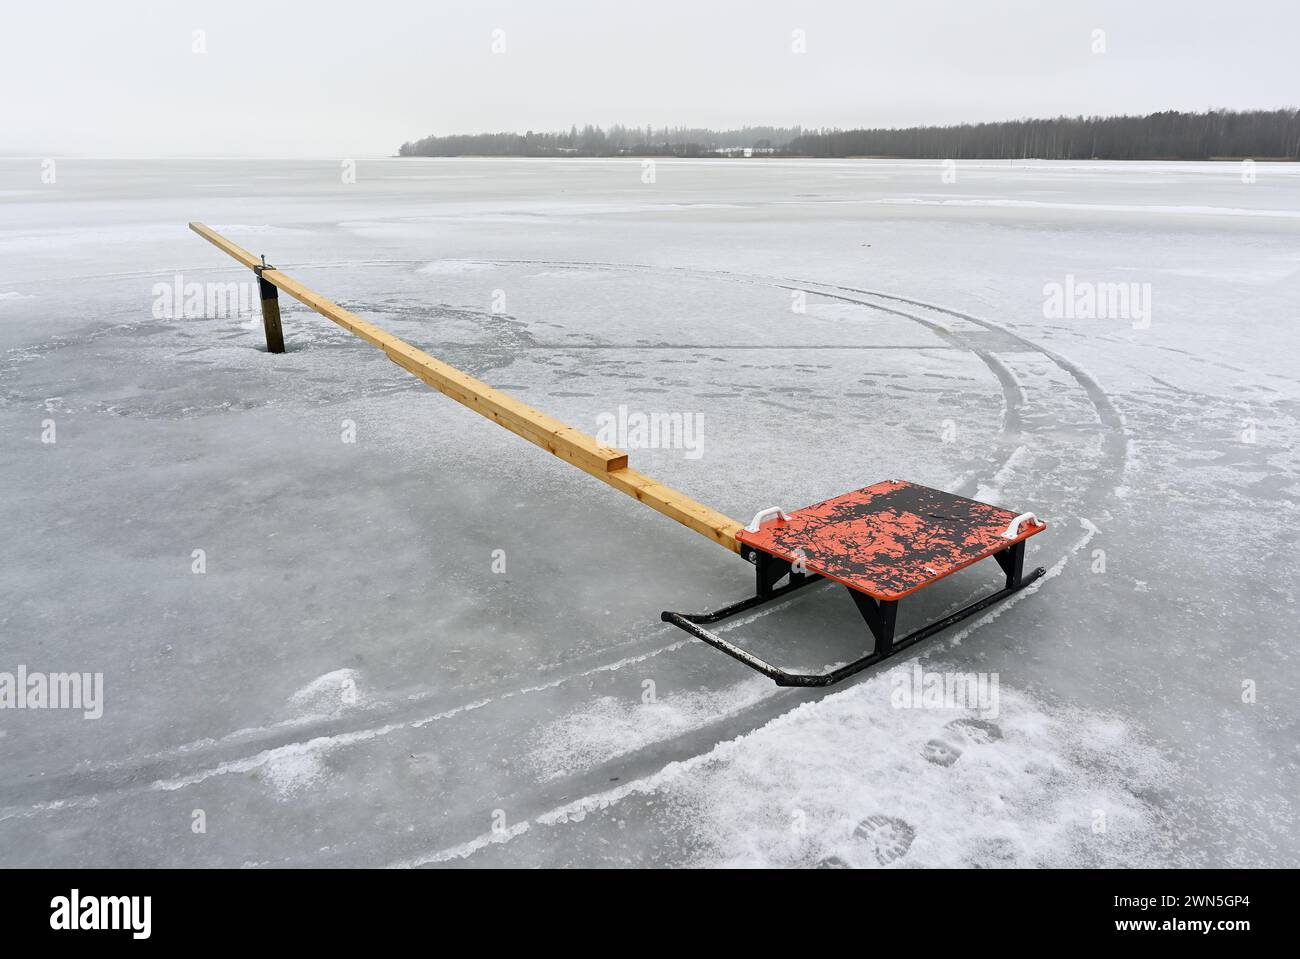 Ein einsamer gefrorener See mit einem einsamen roten Schlitten, der an einer langen Holzplanke befestigt ist, schafft einen starken Kontrast Stockfoto